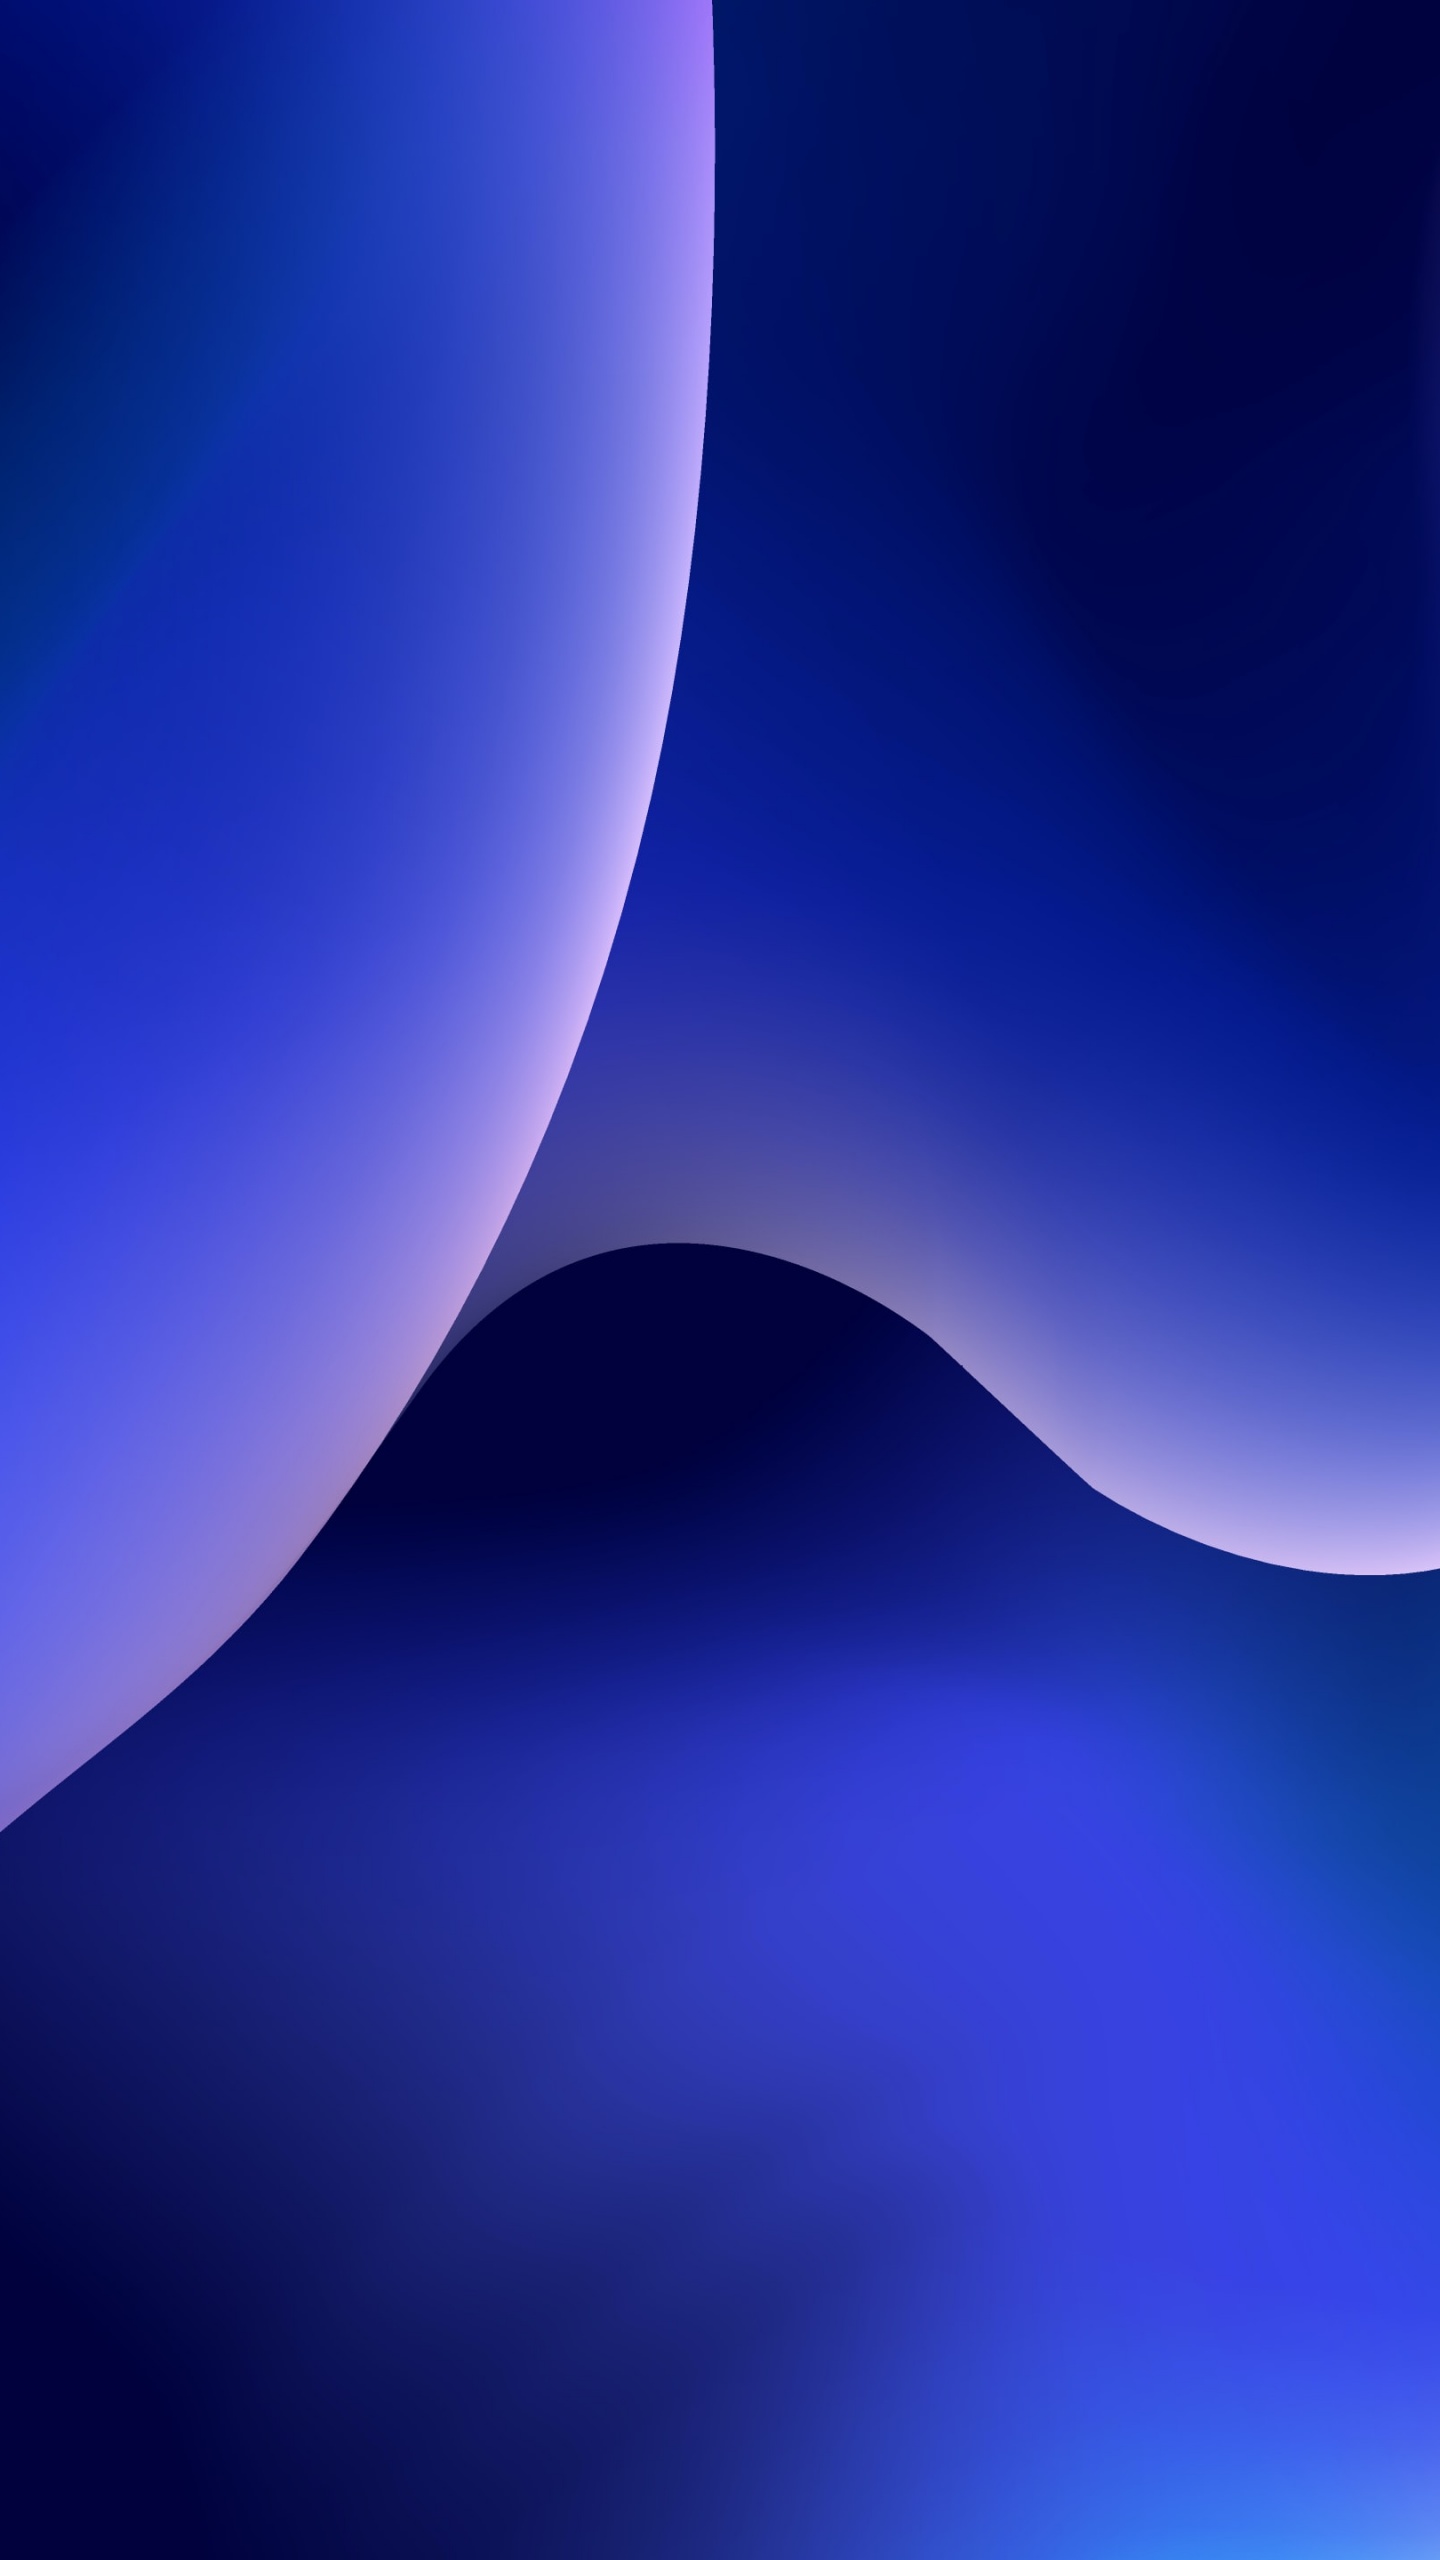 Những hình nền iOS 4K với màu xanh dương trừu tượng sẽ mang đến cho bạn cảm giác thực sự đẹp mắt và tuyệt vời. Hãy đến với nơi đây và khám phá những hình nền thật sự độc đáo và sáng tạo. Chúng sẽ làm cho điện thoại của bạn trở nên hoàn hảo hơn bao giờ hết.